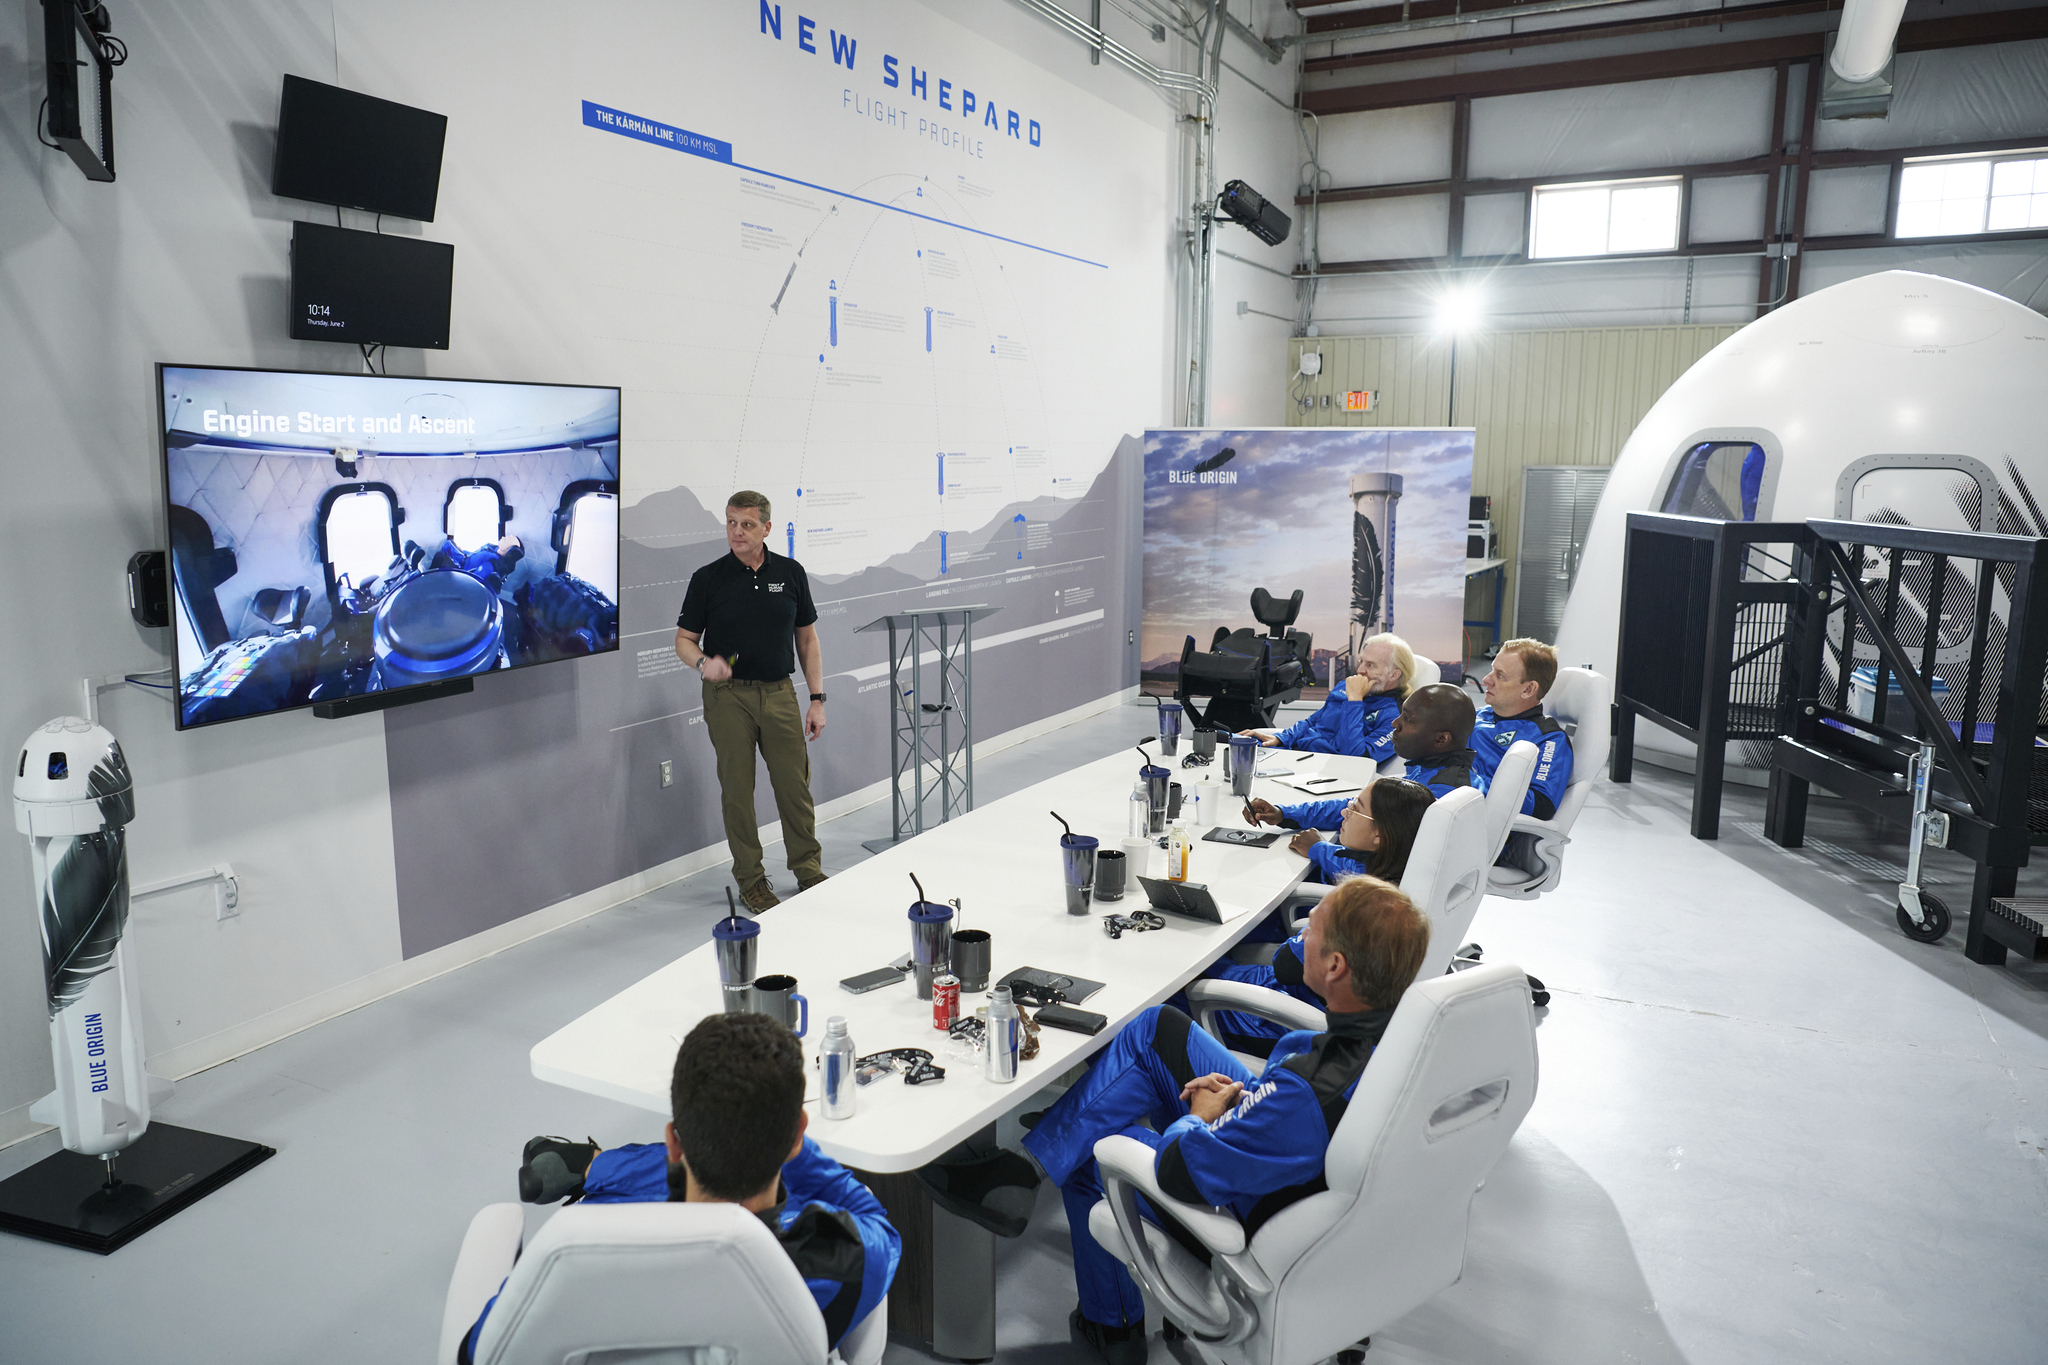 El cohete New Shepard pertenece a la empresa Blue Origin del empresario Jeff Bezos